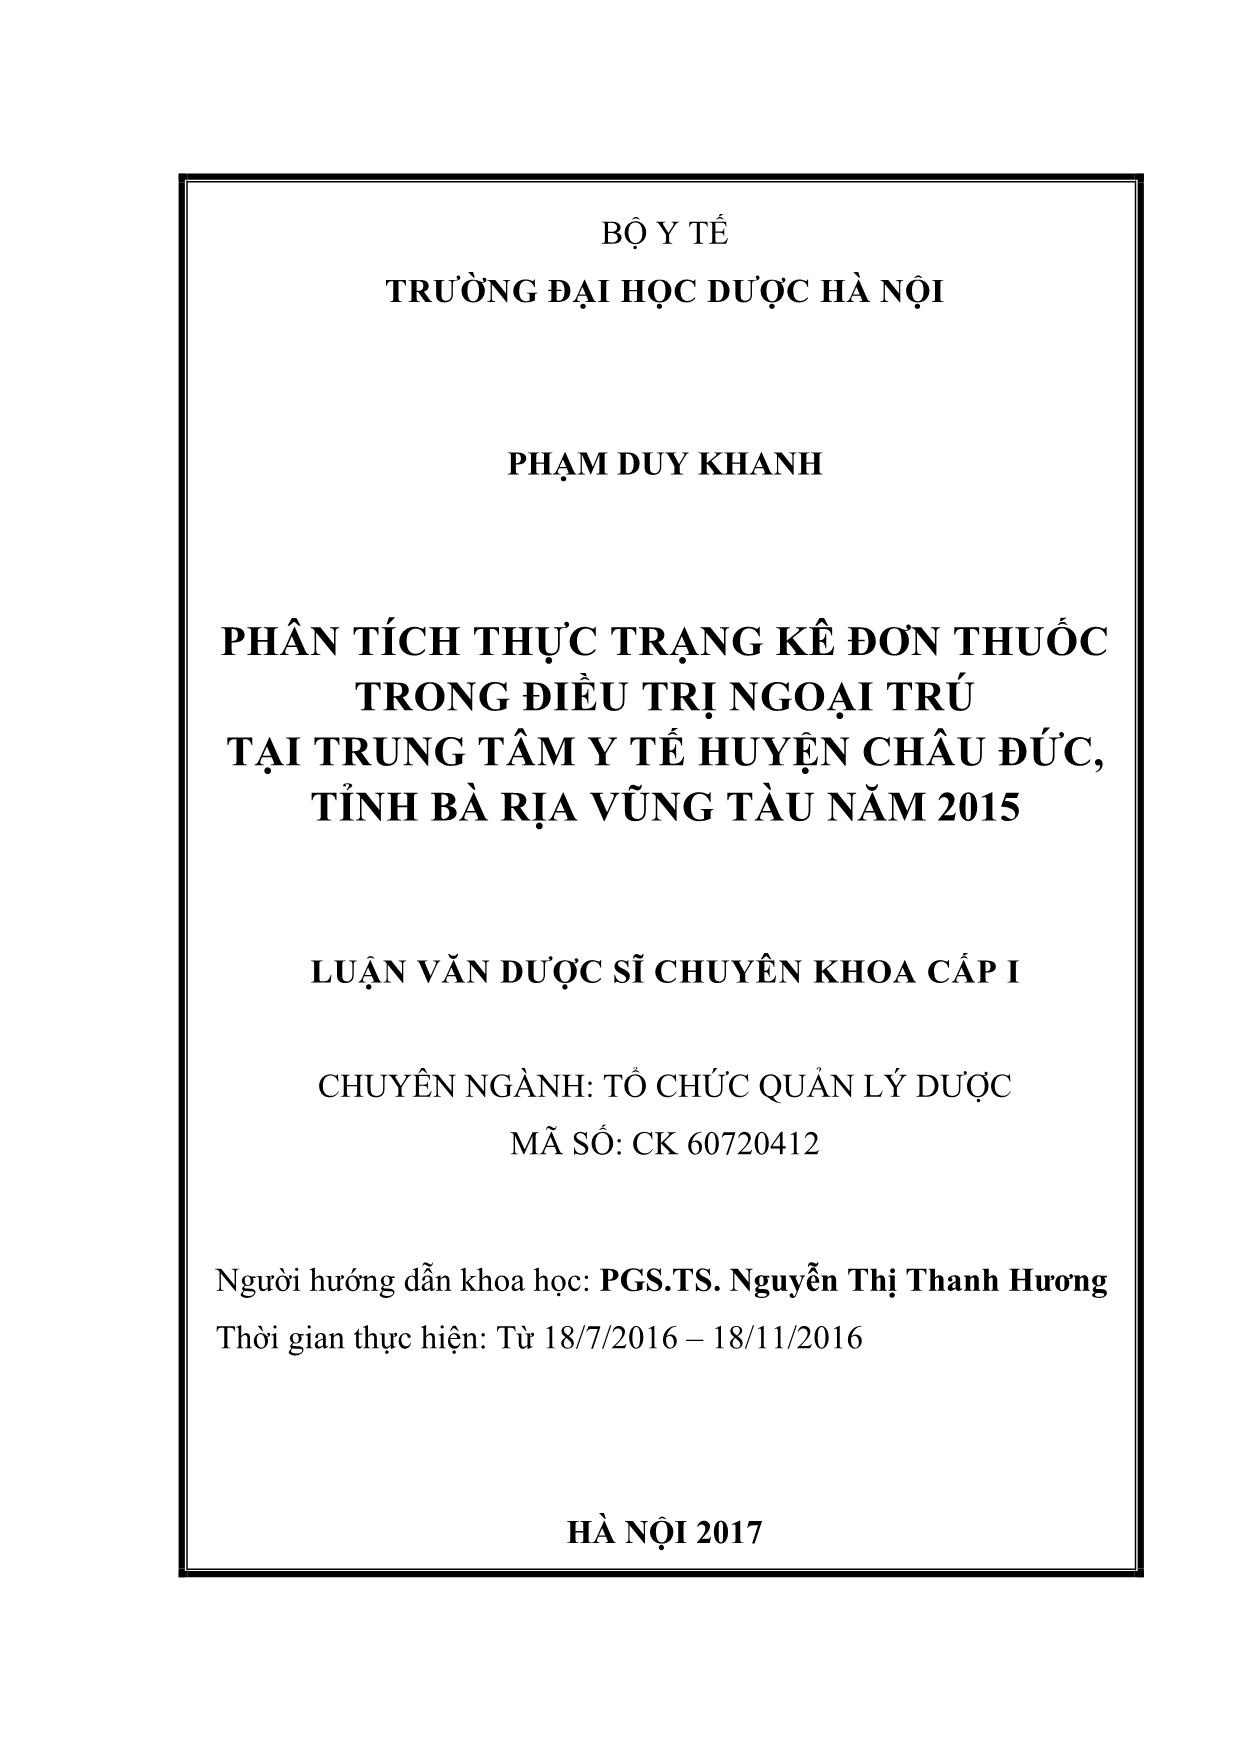 Luận văn Phân tích thực trạng kê đơn thuốc trong điều trị ngoại trú tại trung tâm y tế huyện Châu Đức, tỉnh Bà Rịa Vũng Tàu năm 2015 trang 2